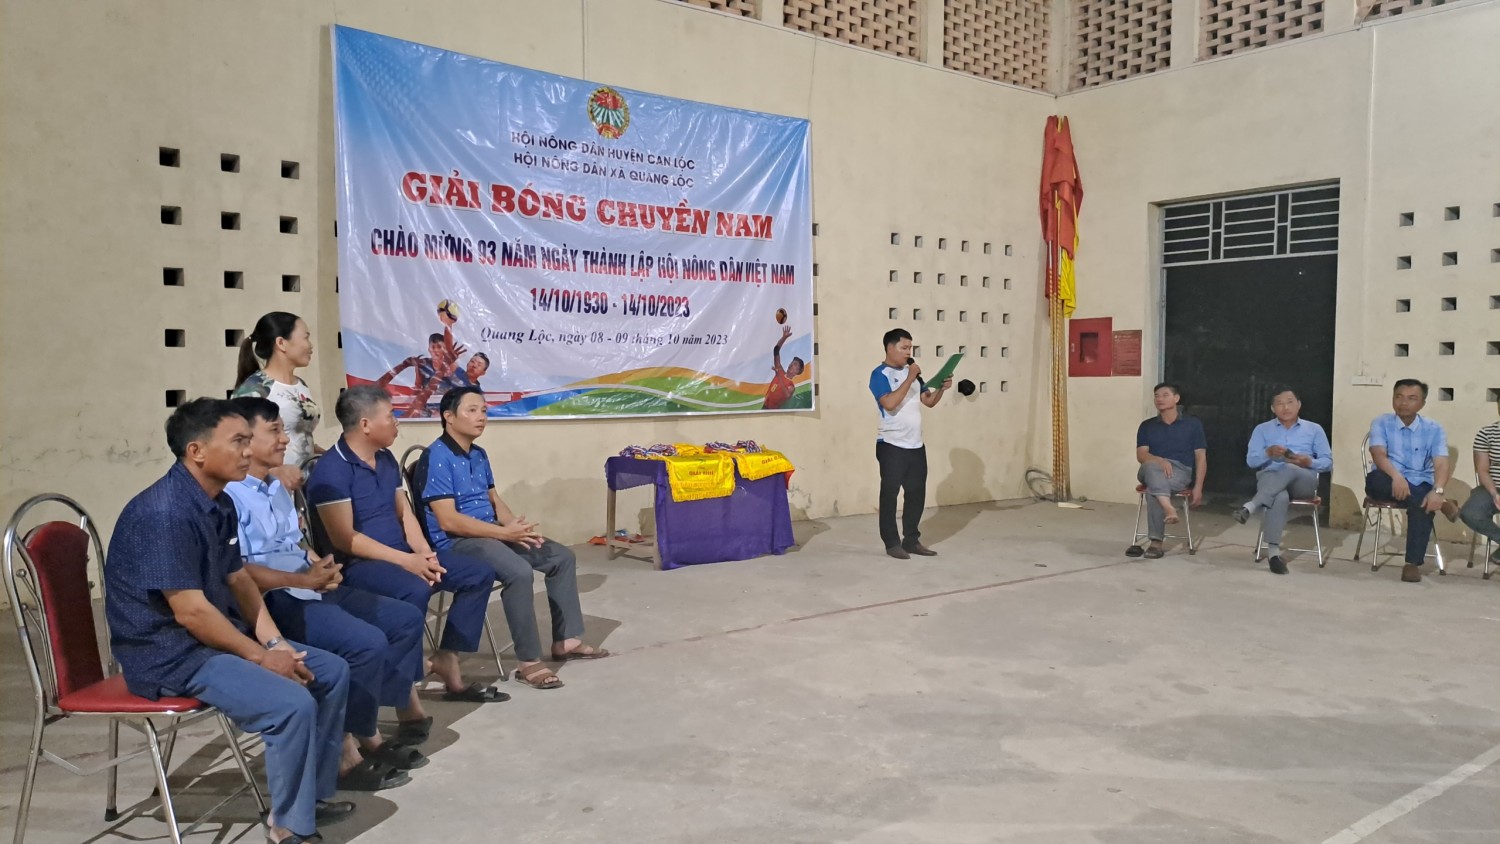 Hội Nông dân xã Quang Lộc tổ chức giải bóng chuyền nam năm 2023